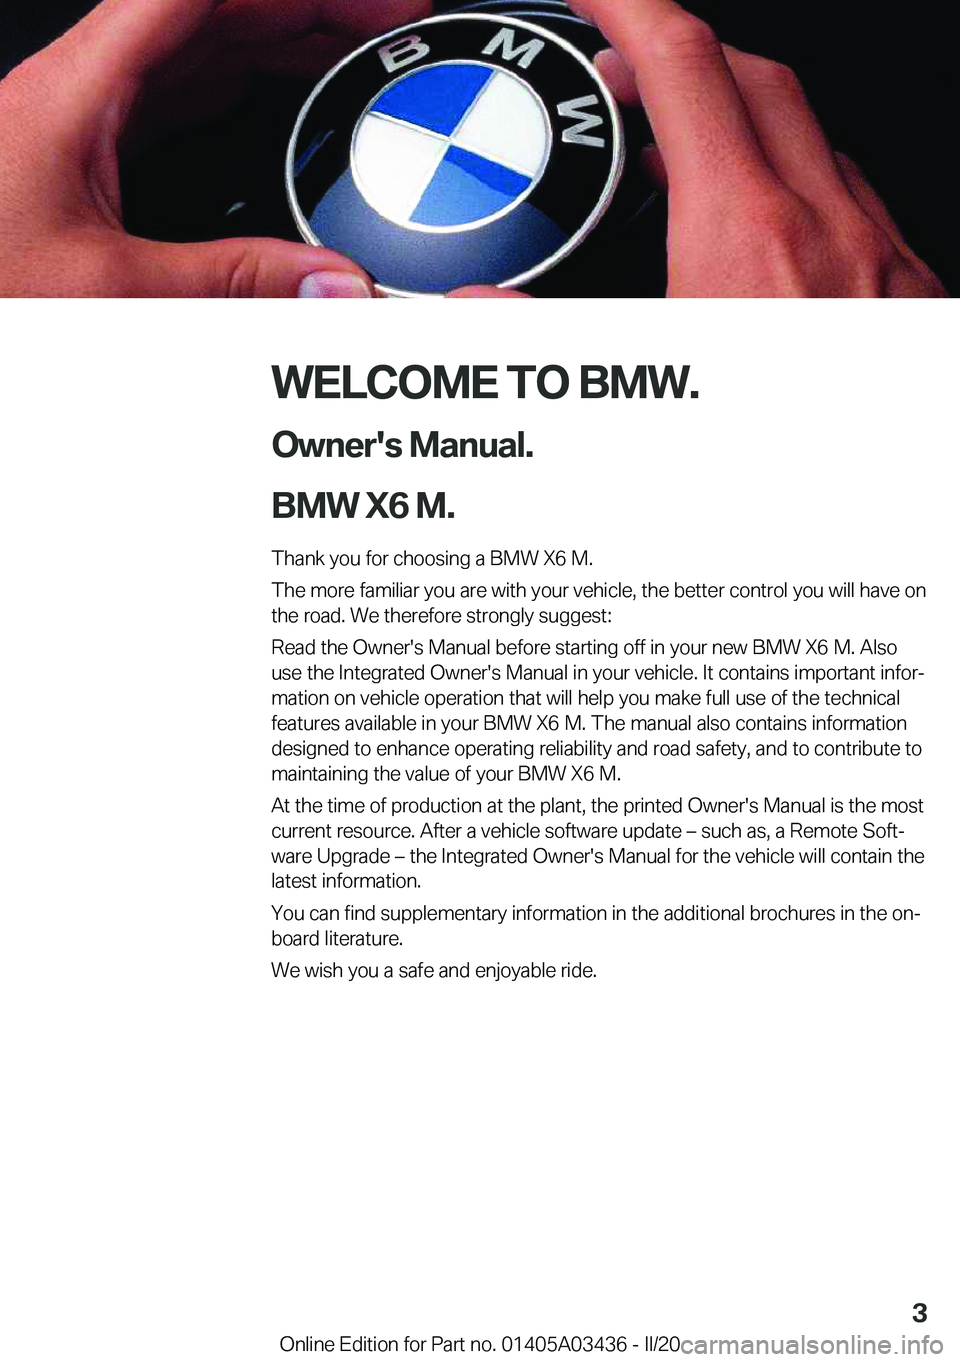 BMW X6 M 2020  Owners Manual �W�E�L�C�O�M�E��T�O��B�M�W�.�O�w�n�e�r�'�s��M�a�n�u�a�l�.
�B�M�W��X�6��M�.
�T�h�a�n�k��y�o�u��f�o�r��c�h�o�o�s�i�n�g��a��B�M�W��X�6��M�.
�T�h�e��m�o�r�e��f�a�m�i�l�i�a�r��y�o�u��a�